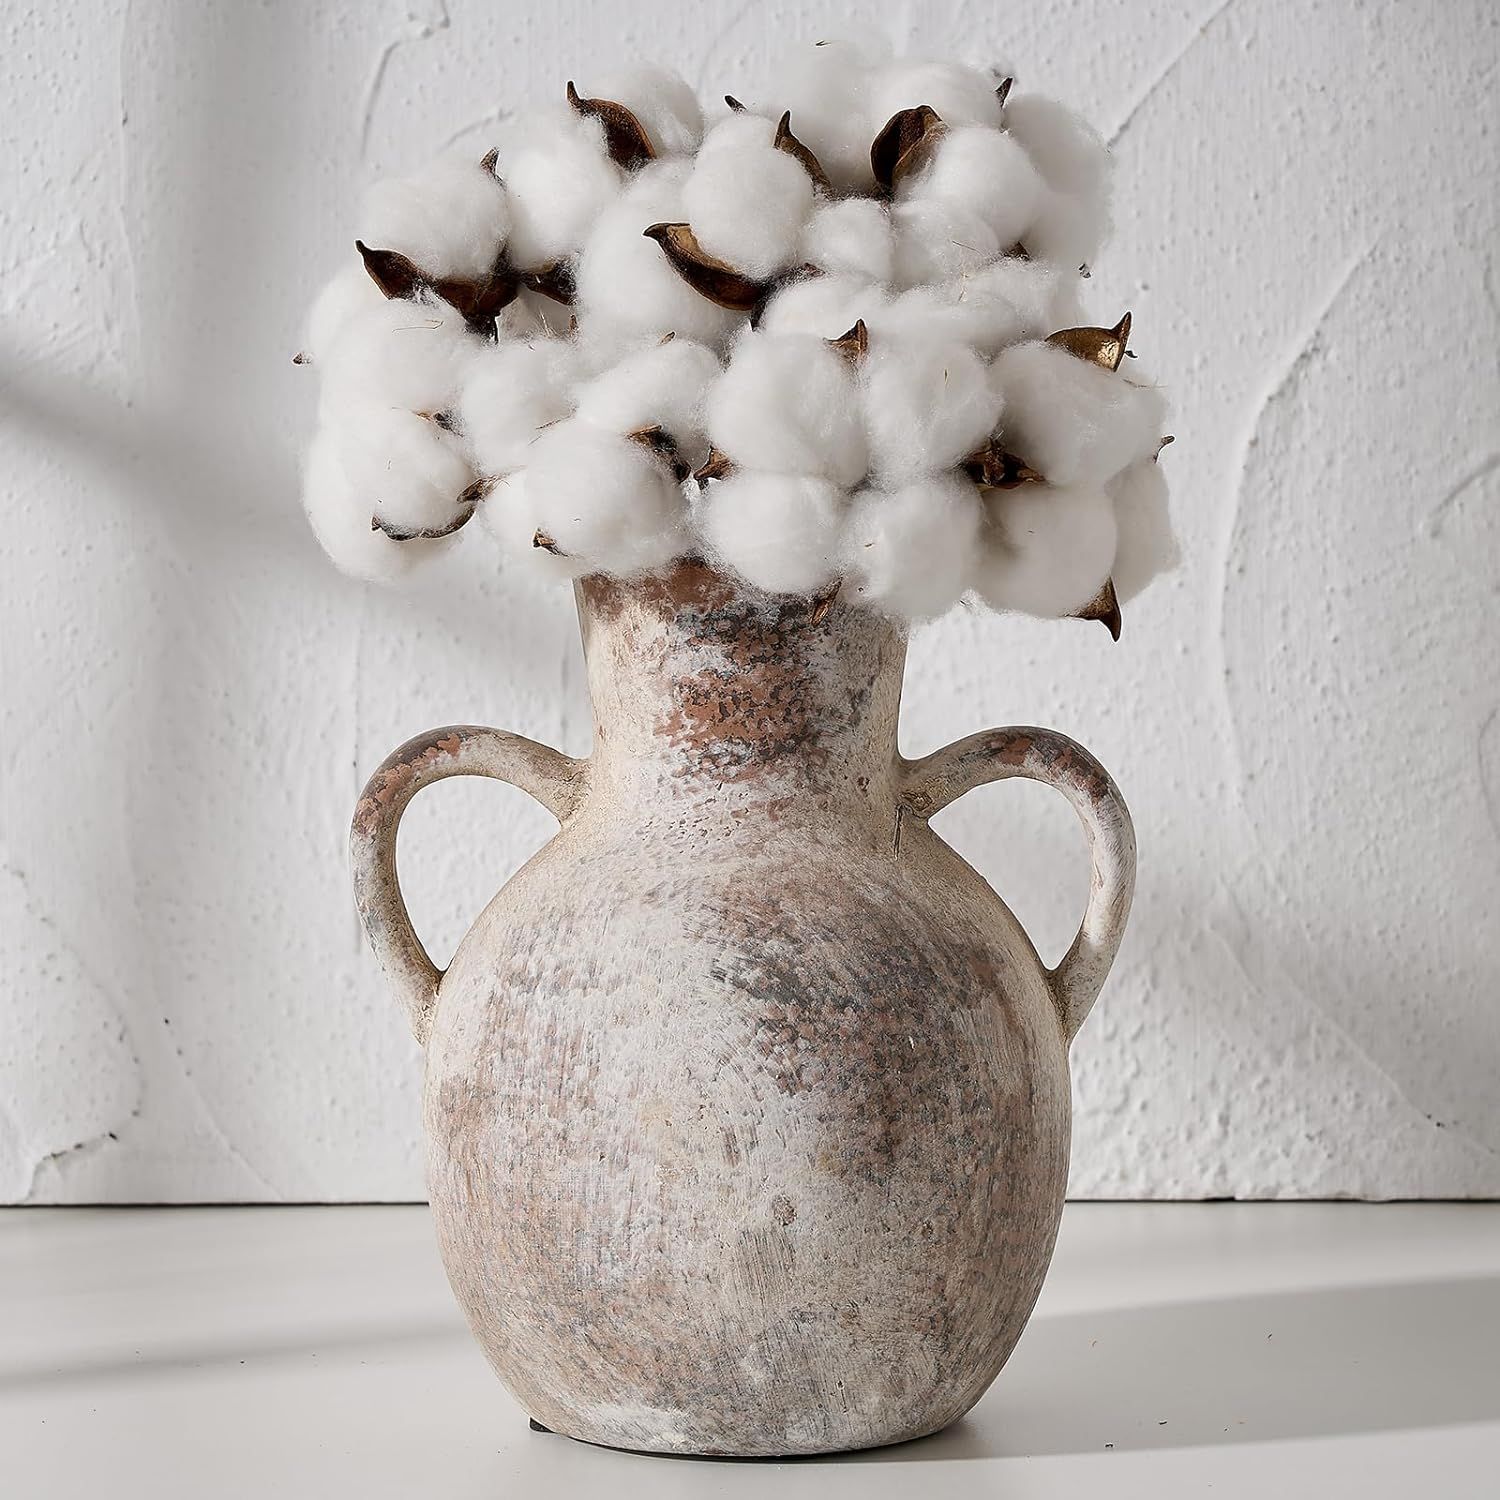 SIDUCAL Rustic Ceramic Farmhouse Flower Vase with 2 Handles, Whitewashed Terra Cotta Vase, Decora... | Amazon (US)